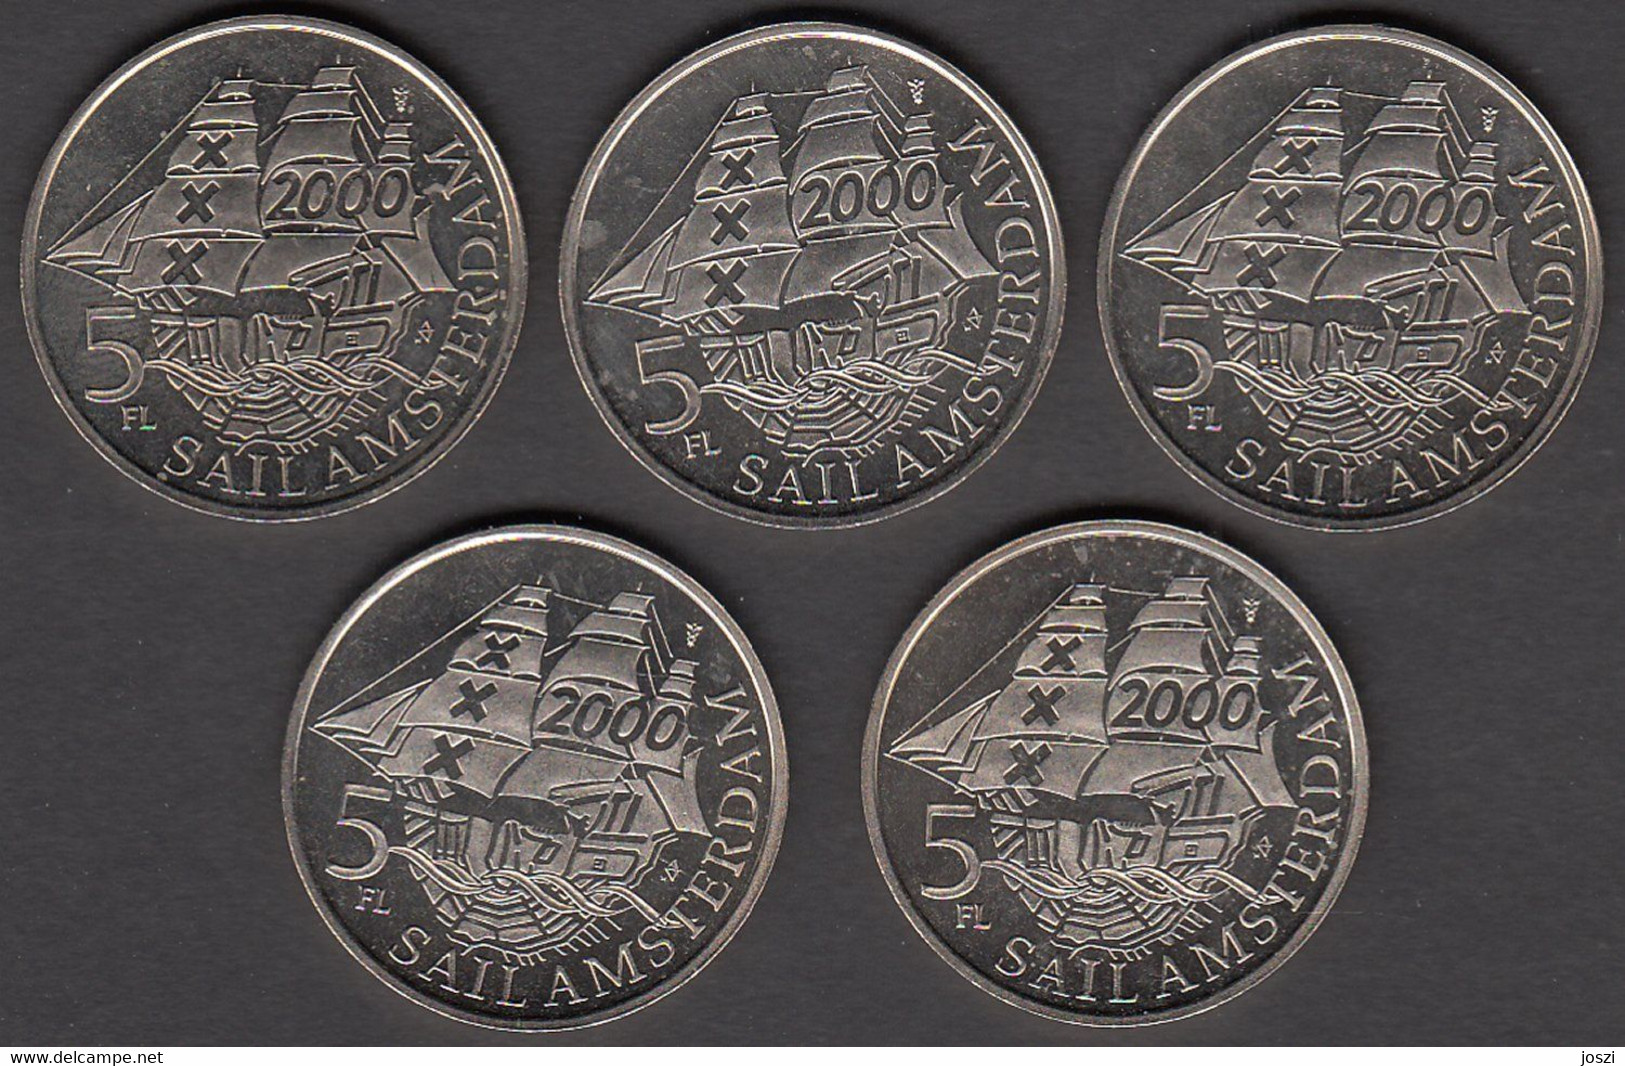 Nederland Set Penningen (5) Sail Amsterdam 2000 5 Florijn - Elongated Coins